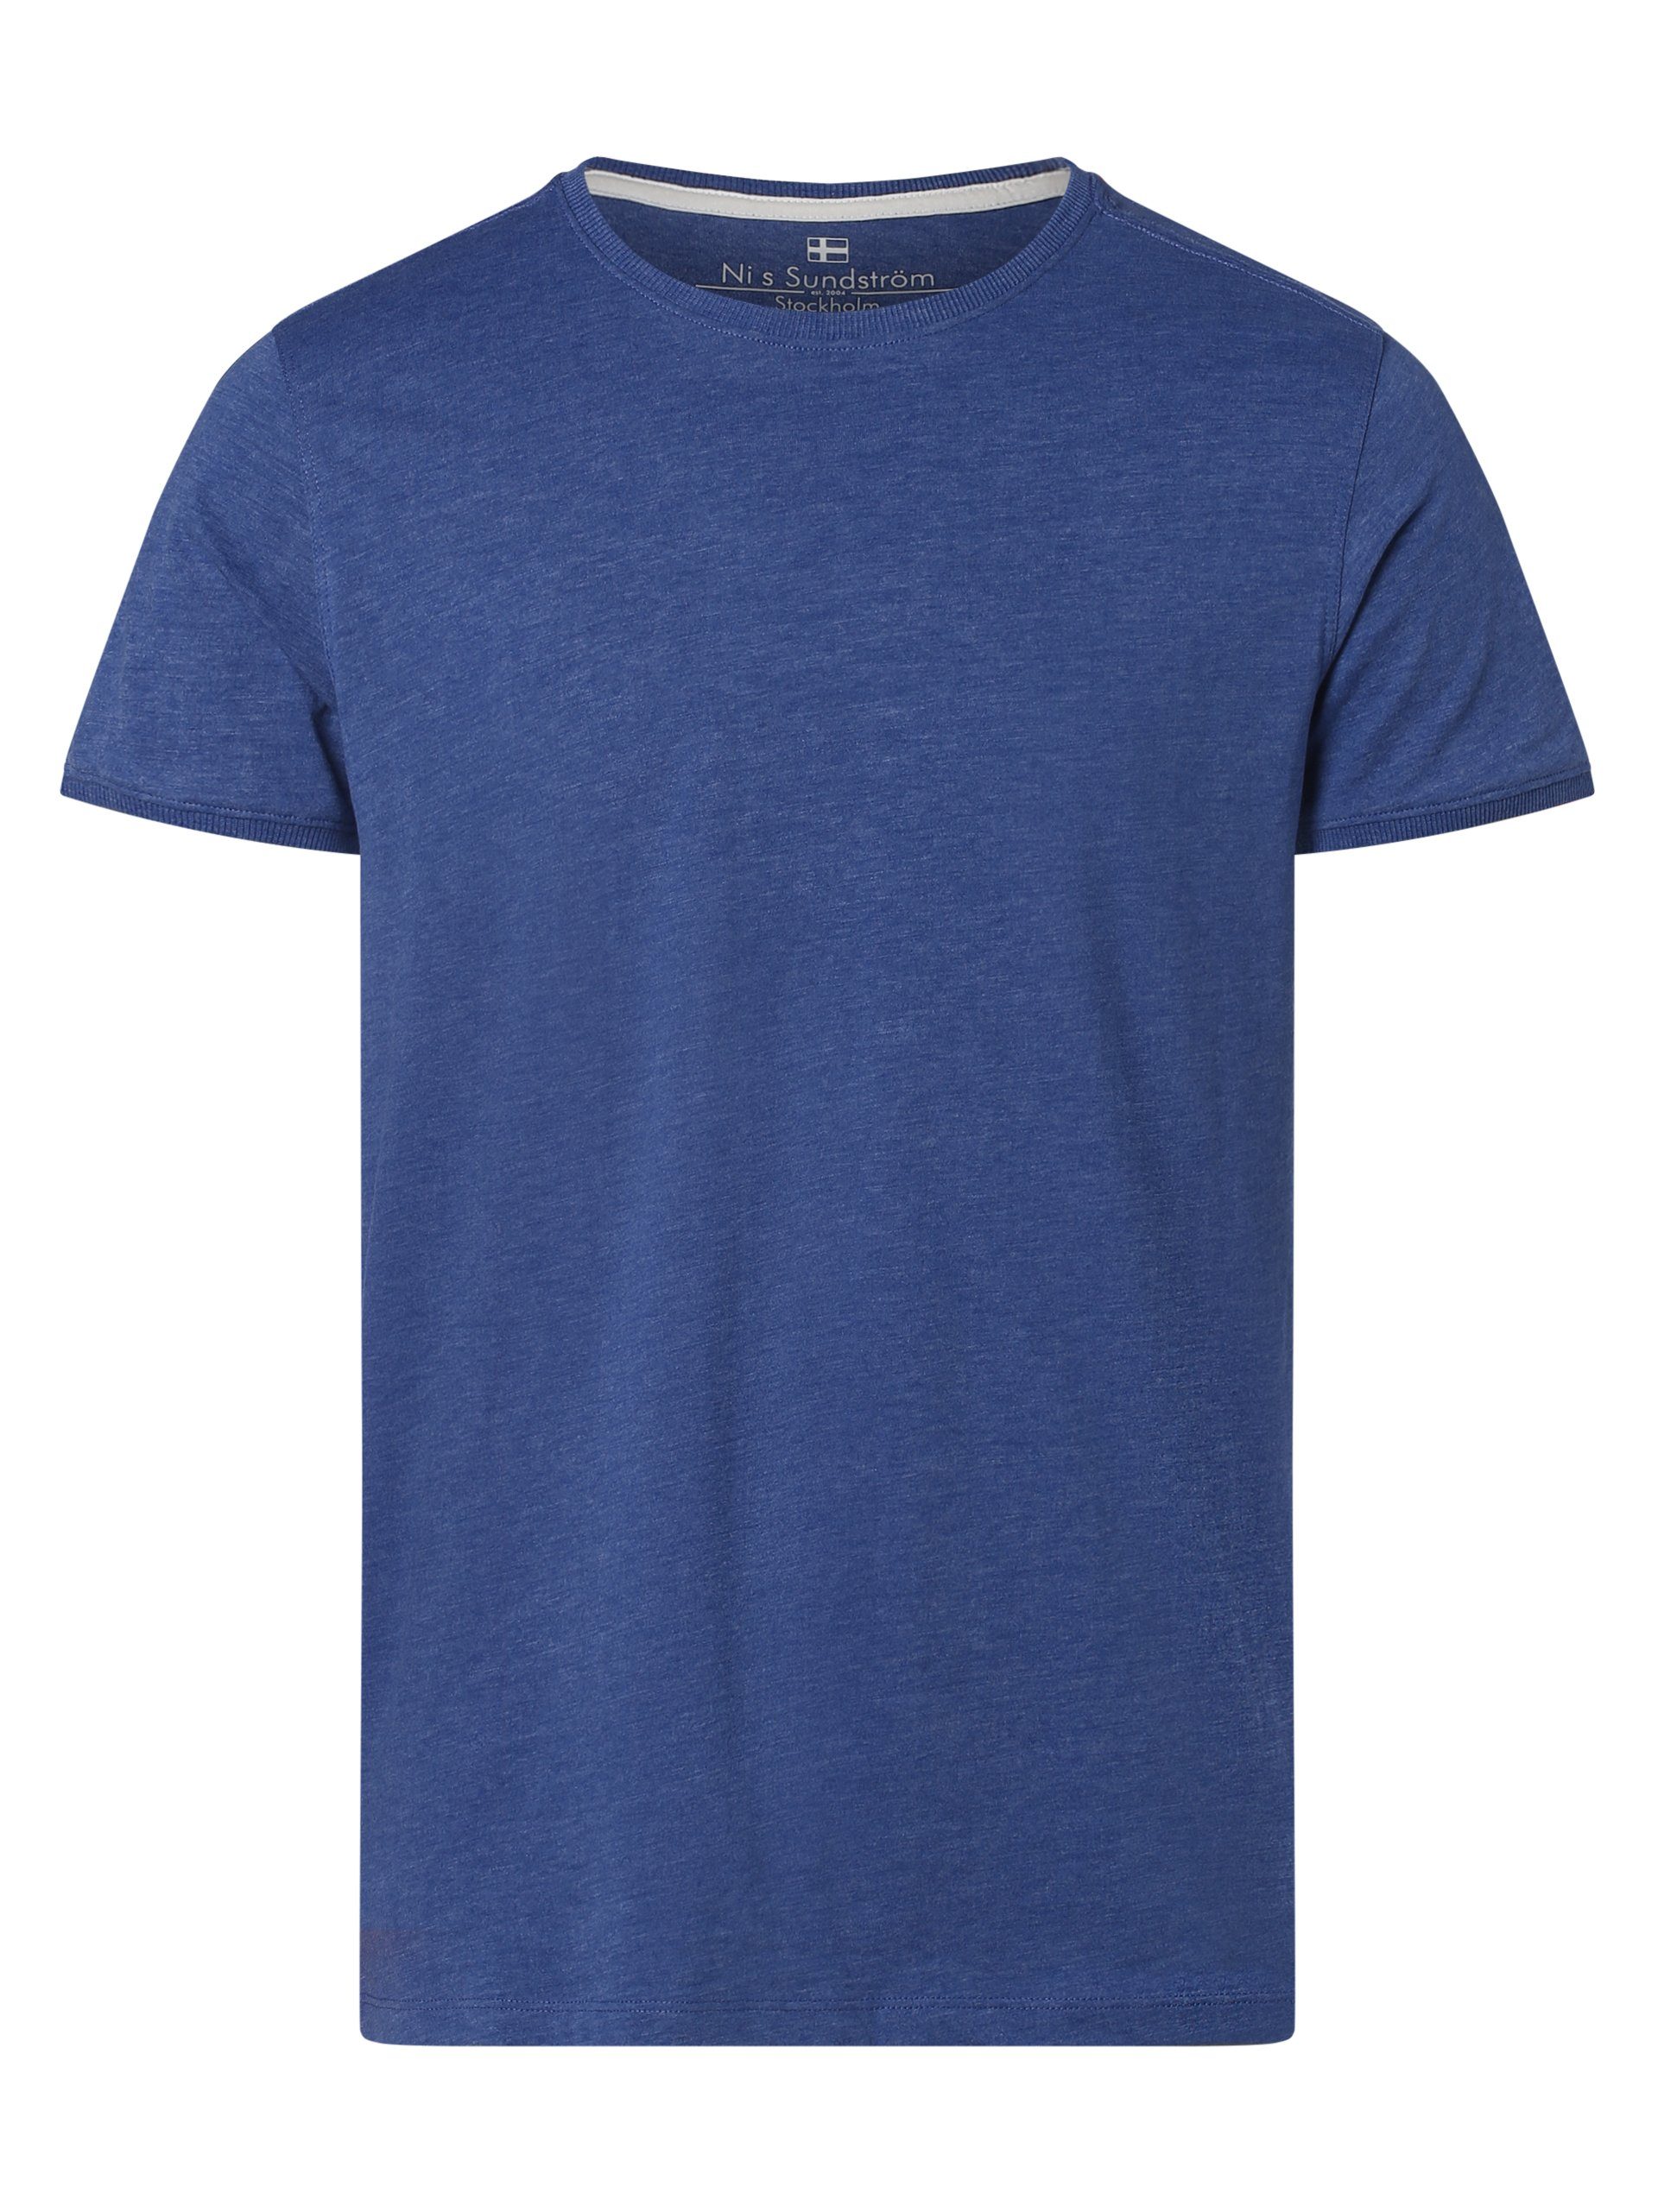 Nils Sundström T-Shirt blau